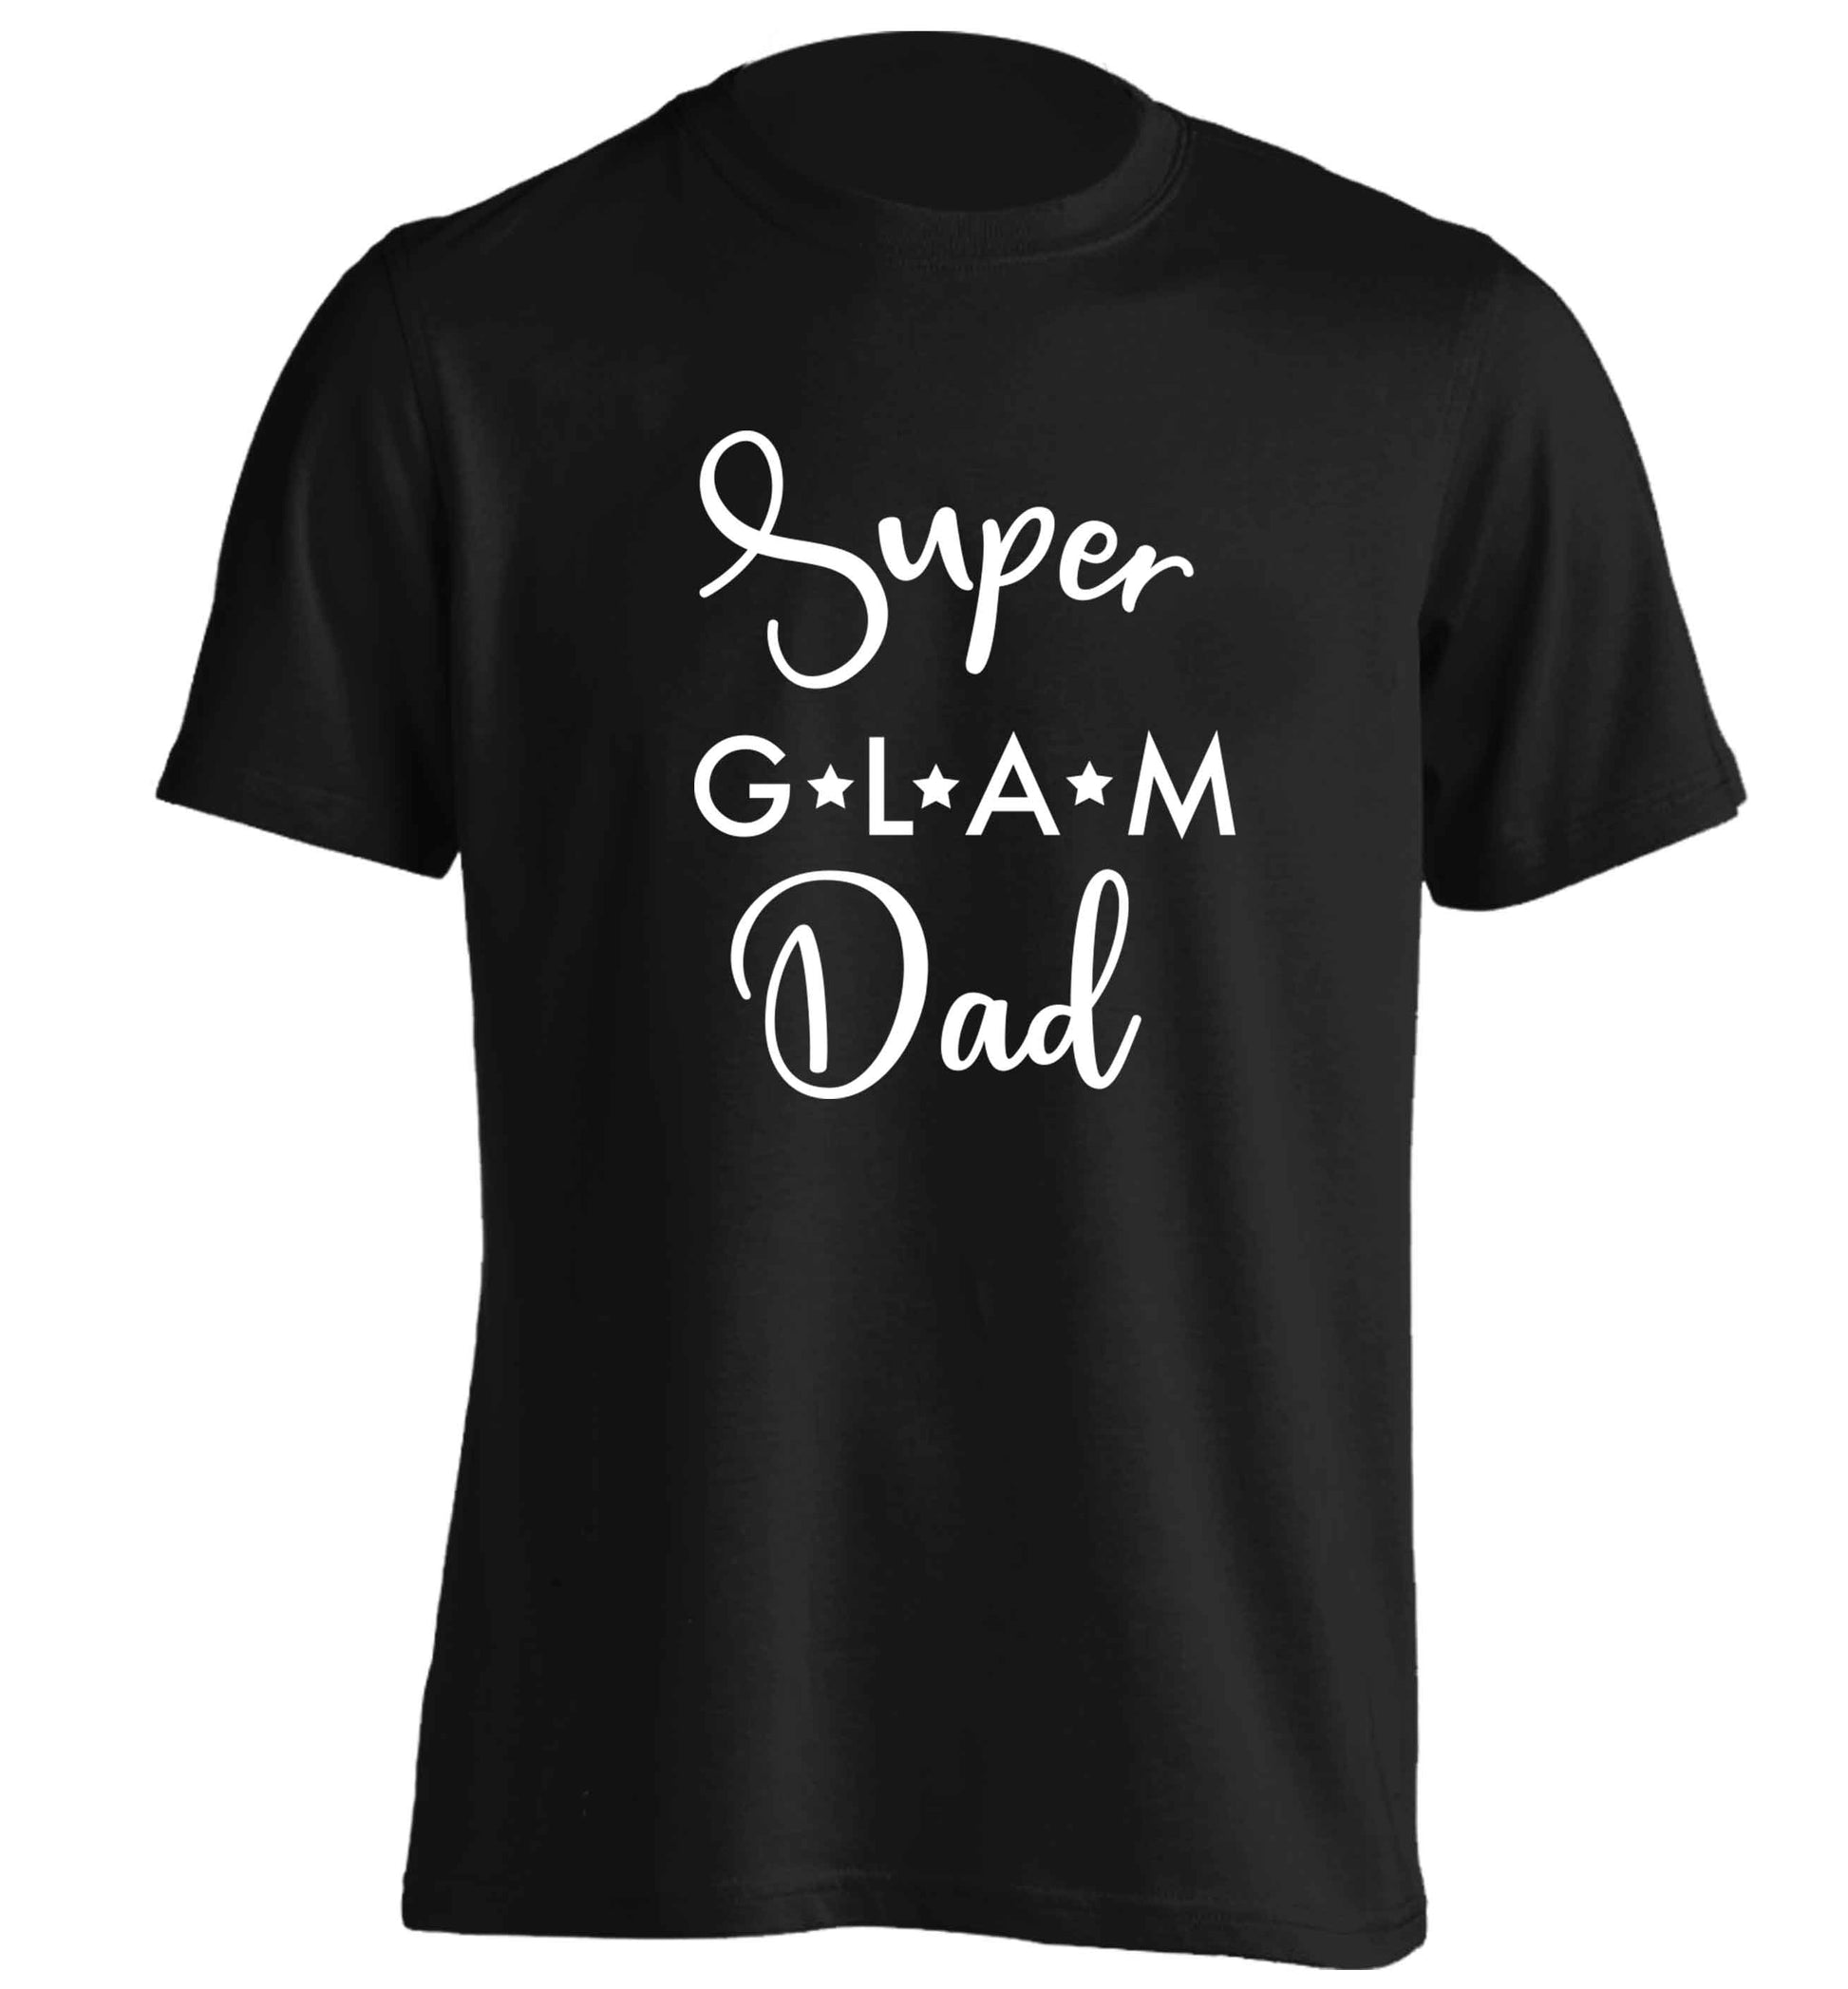 Super glam Dad adults unisex black Tshirt 2XL